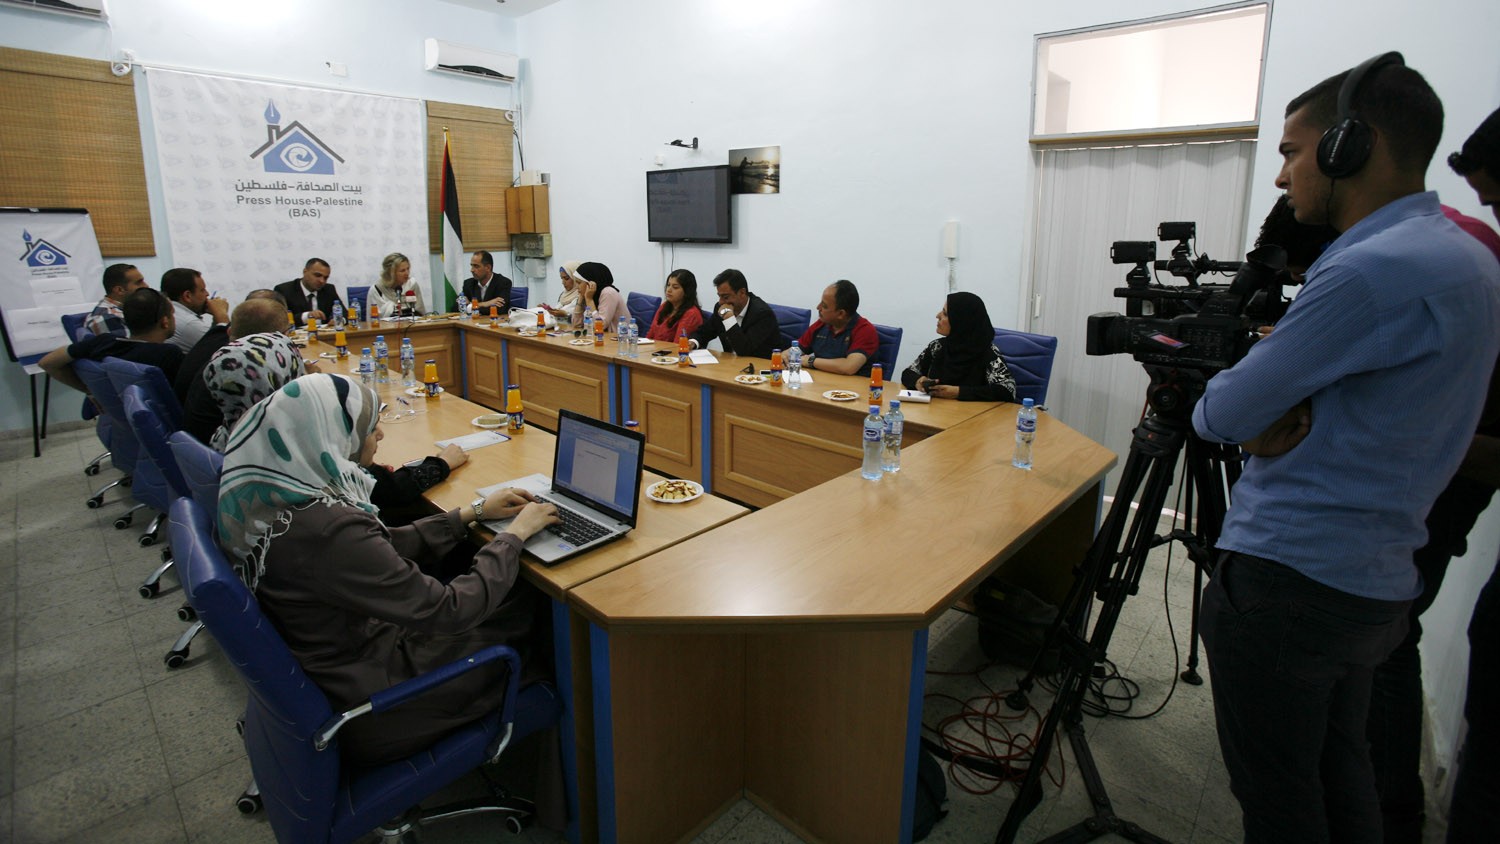 لقاء خاص يجمع السفيرة الهولندية بالصحفيين في غزة